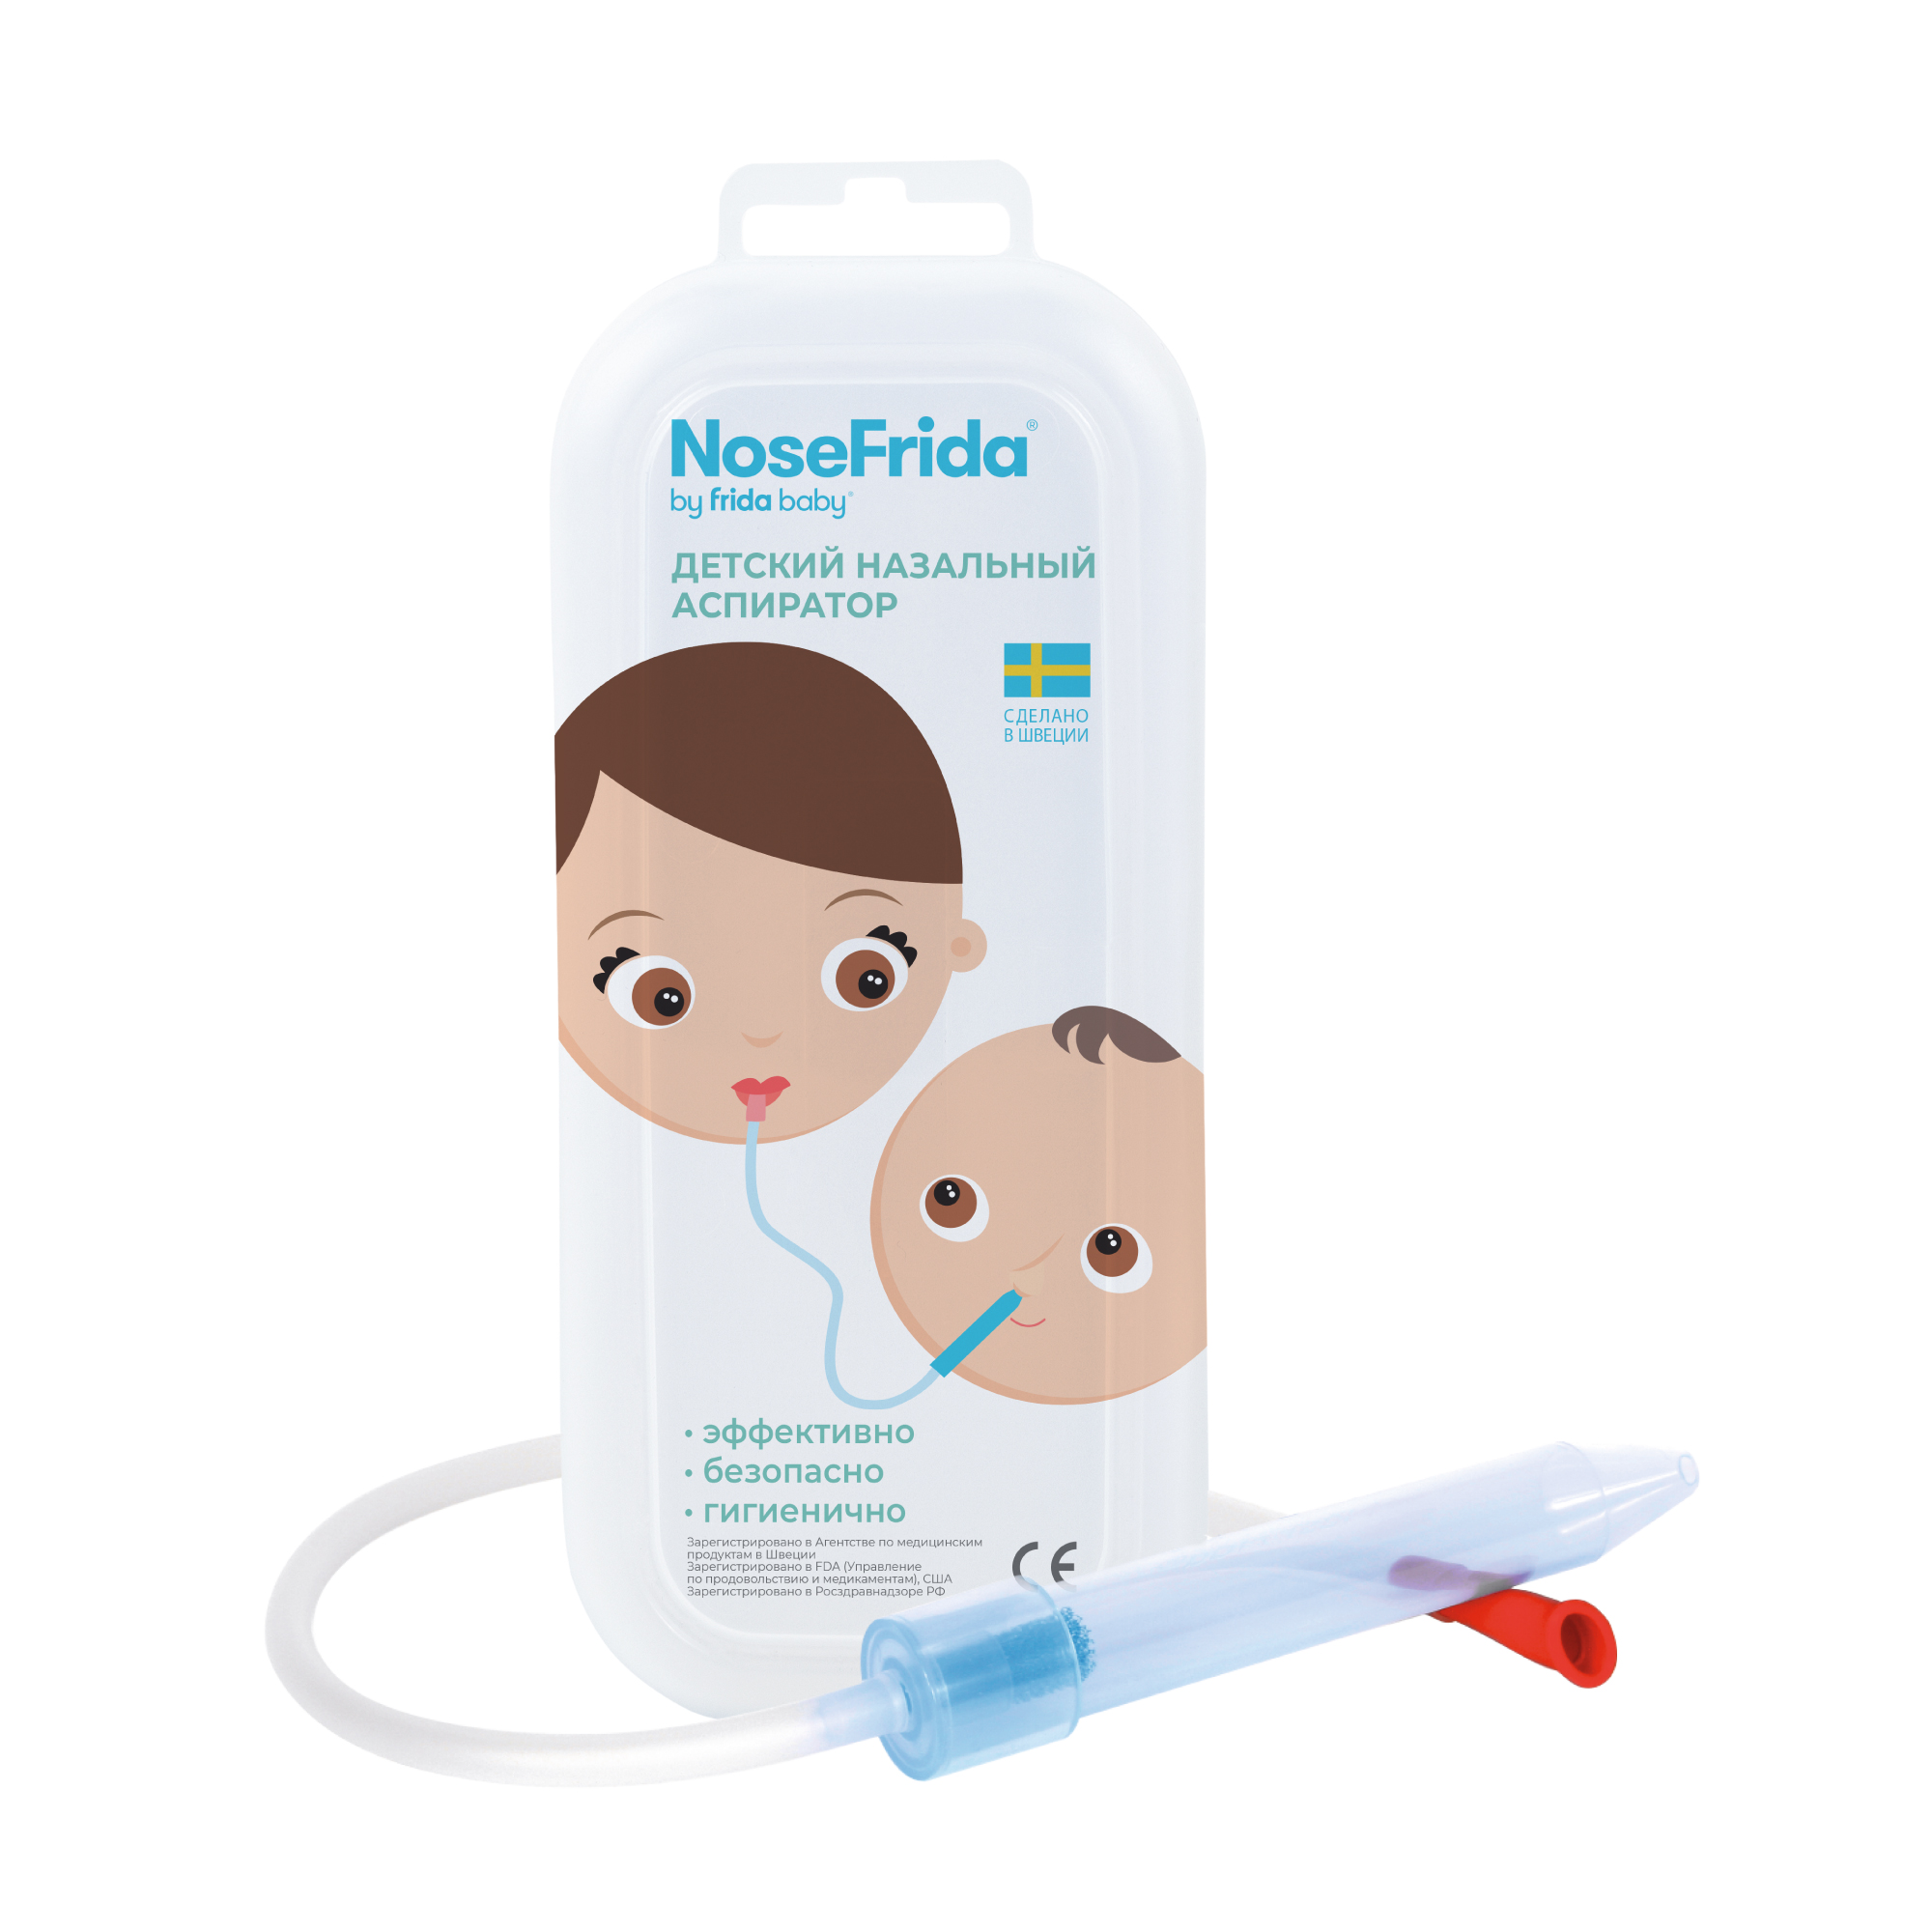 Nosefrida (Носфрида), аспиратор назальный для детей завещание доктора шребера